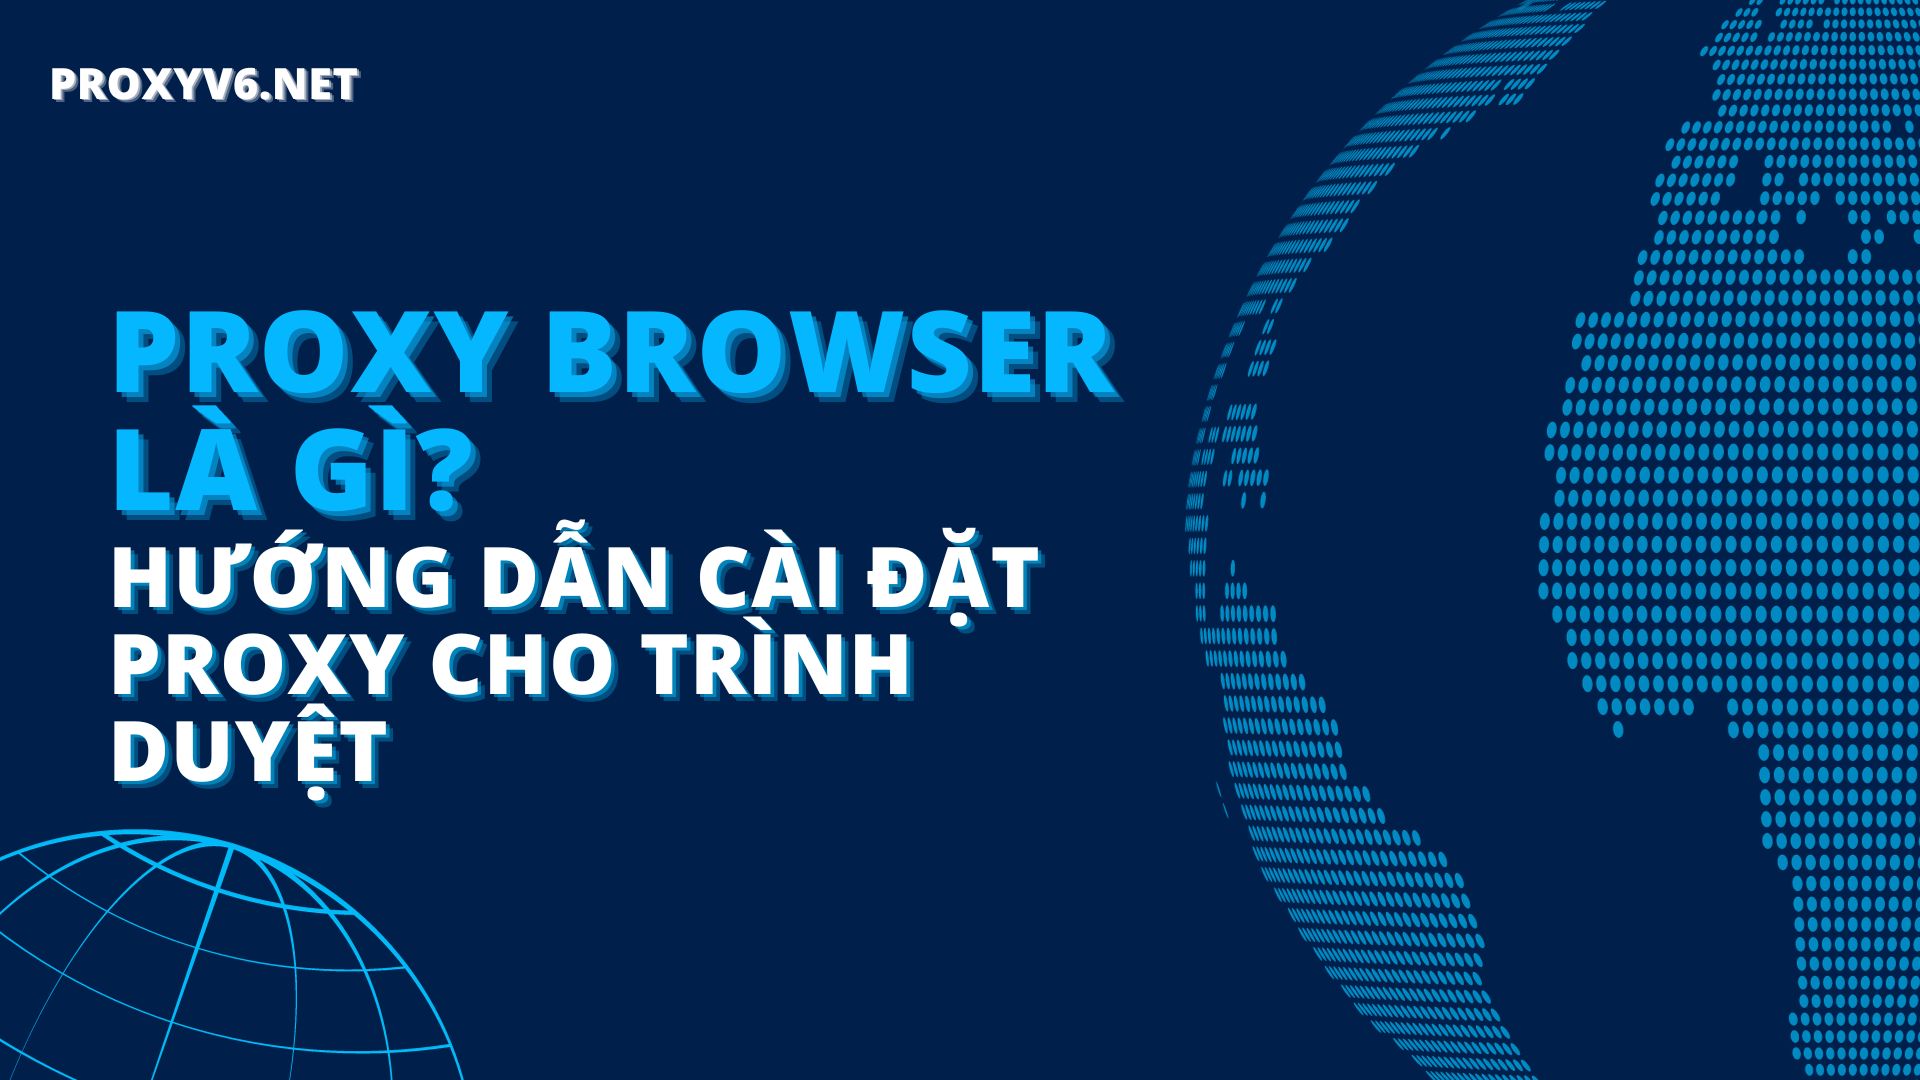 Proxy Browser là gì? Hướng dẫn cài đặt Proxy cho trình duyệt